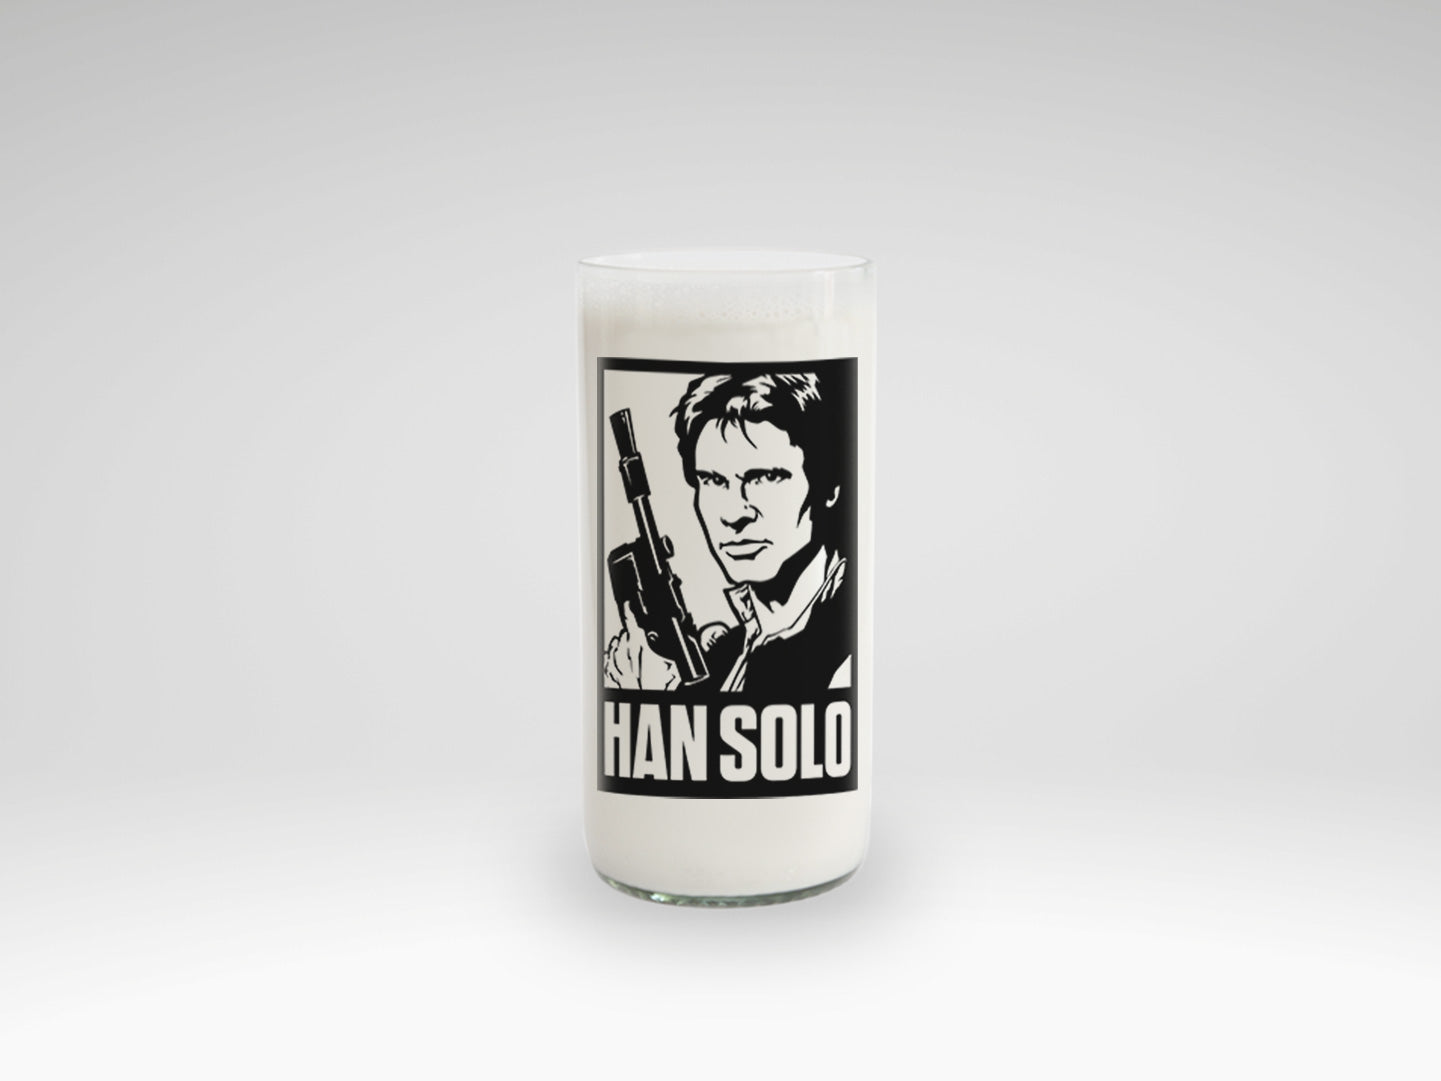 Vaso Han Solo de Star Wars New Hope color transparente 500ml